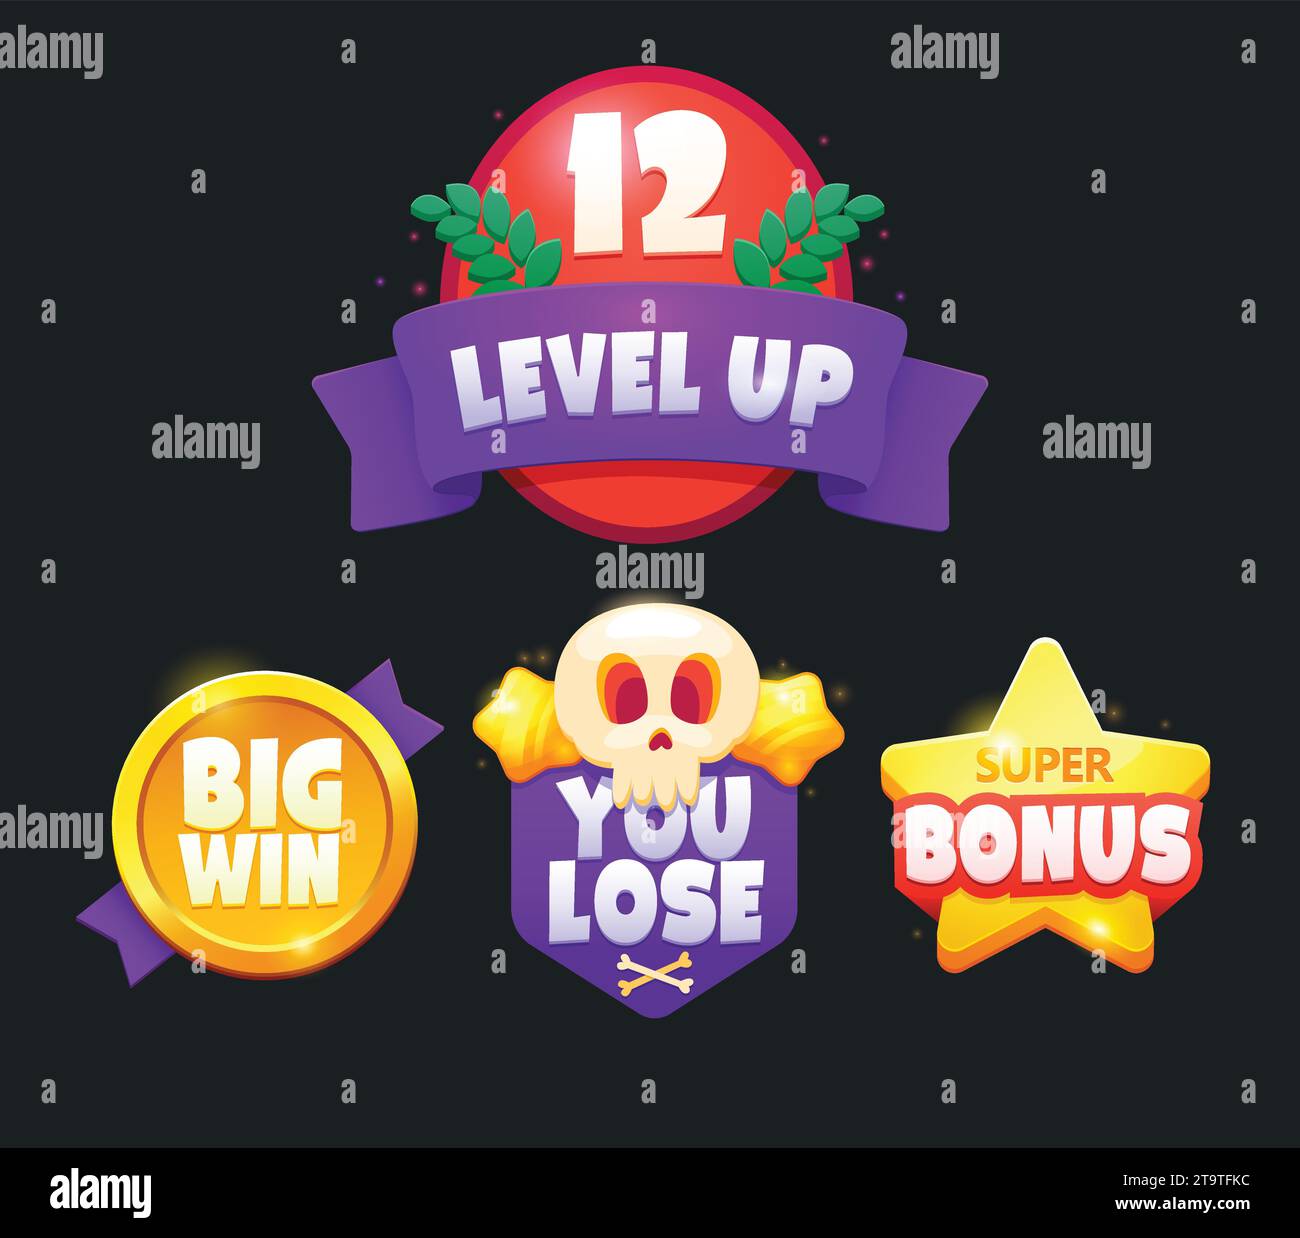 Game Icon Bonus. Level Up Icon, New Leve Grafica di DG-Studio · Creative  Fabrica